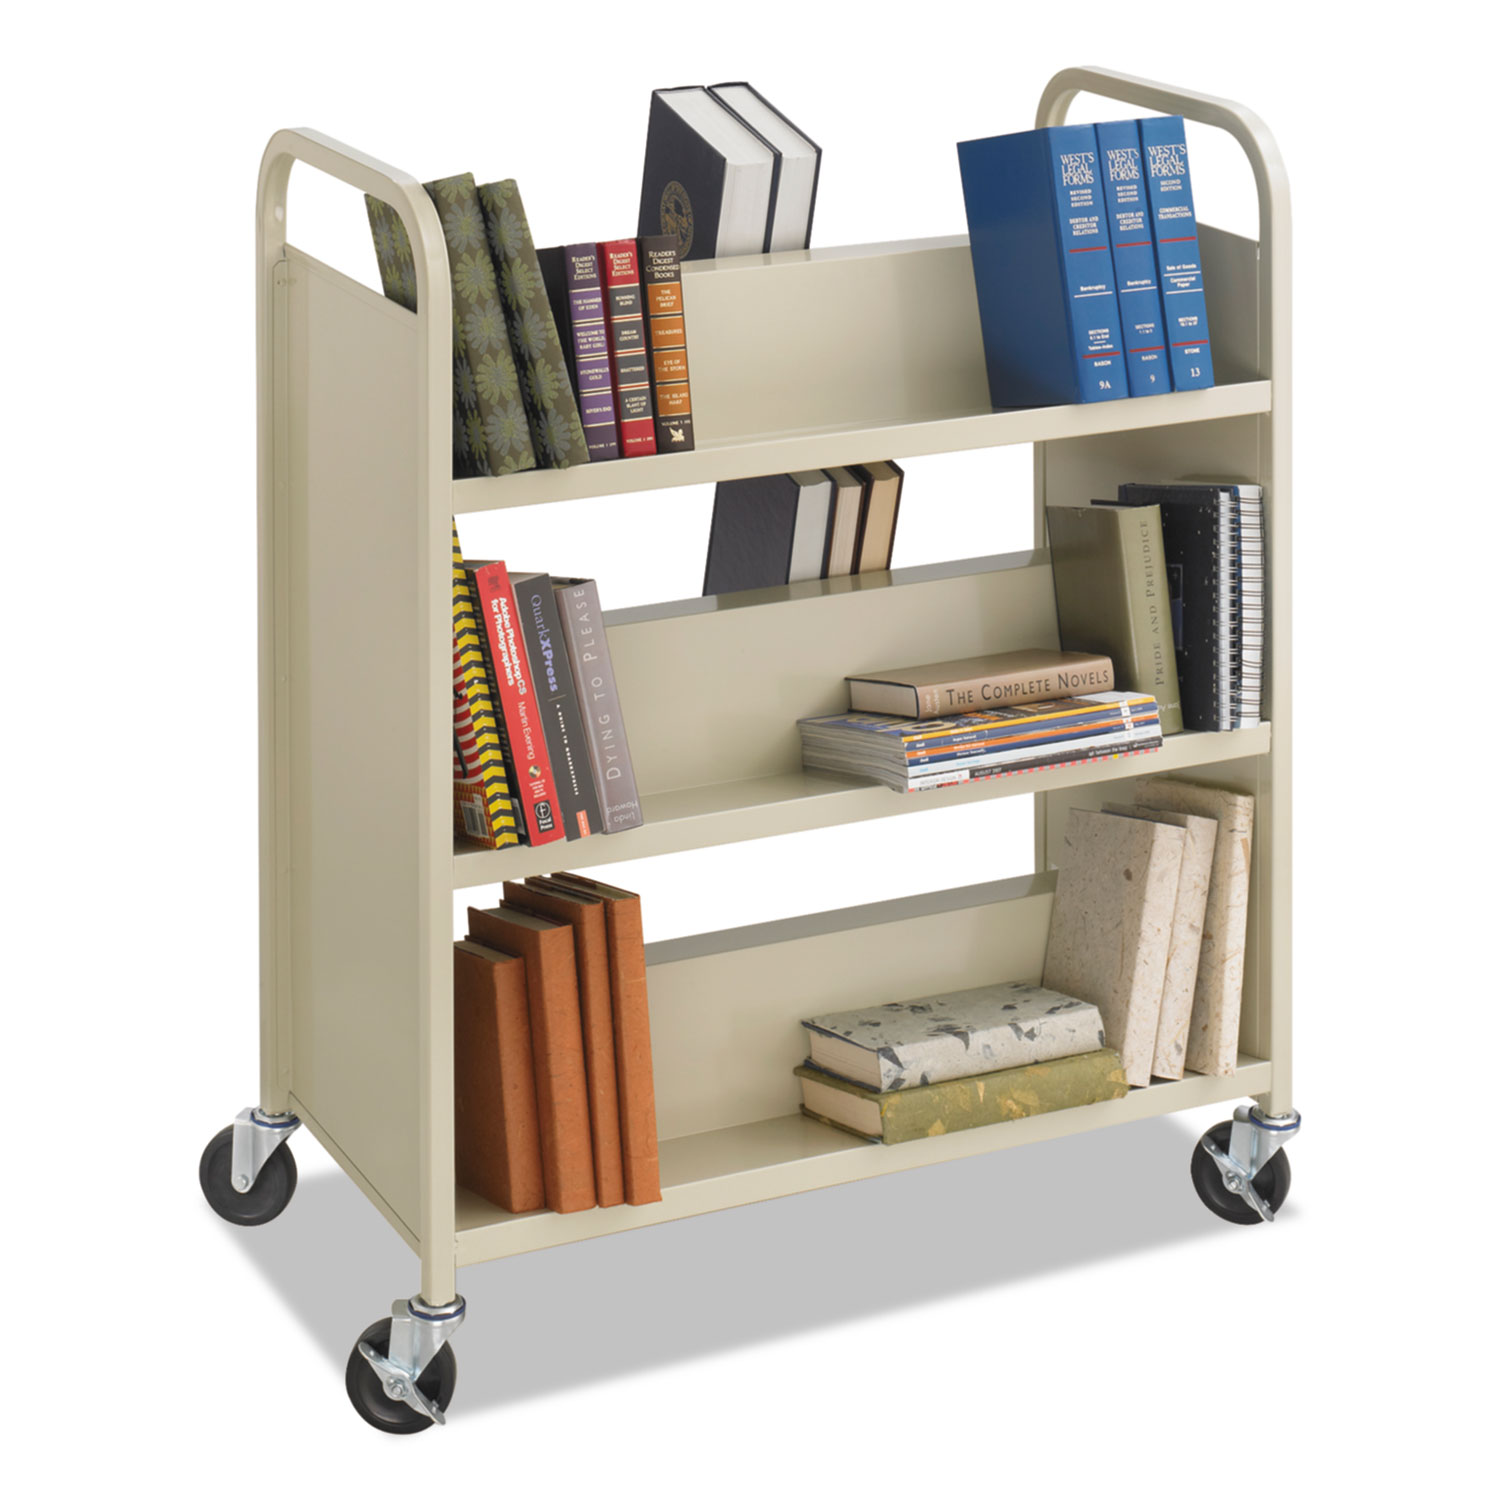  Safco 5357SA Steel Book Cart, Six-Shelf, 36w x 18.5d x 43.5h, Sand (SAF5357SA) 